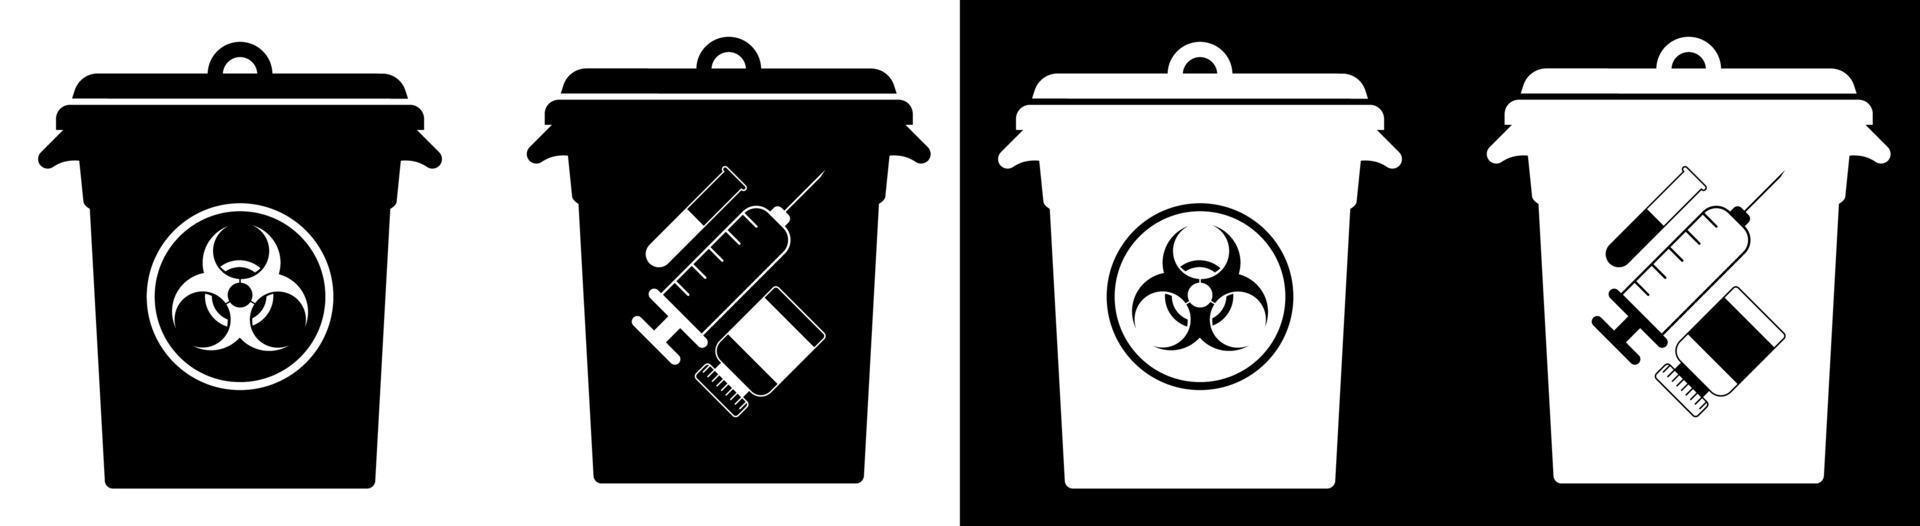 latas de lixo com sinais de resíduos perigosos. eliminação de materiais perigosos, processamento de resíduos industriais. cuidando do meio ambiente vetor